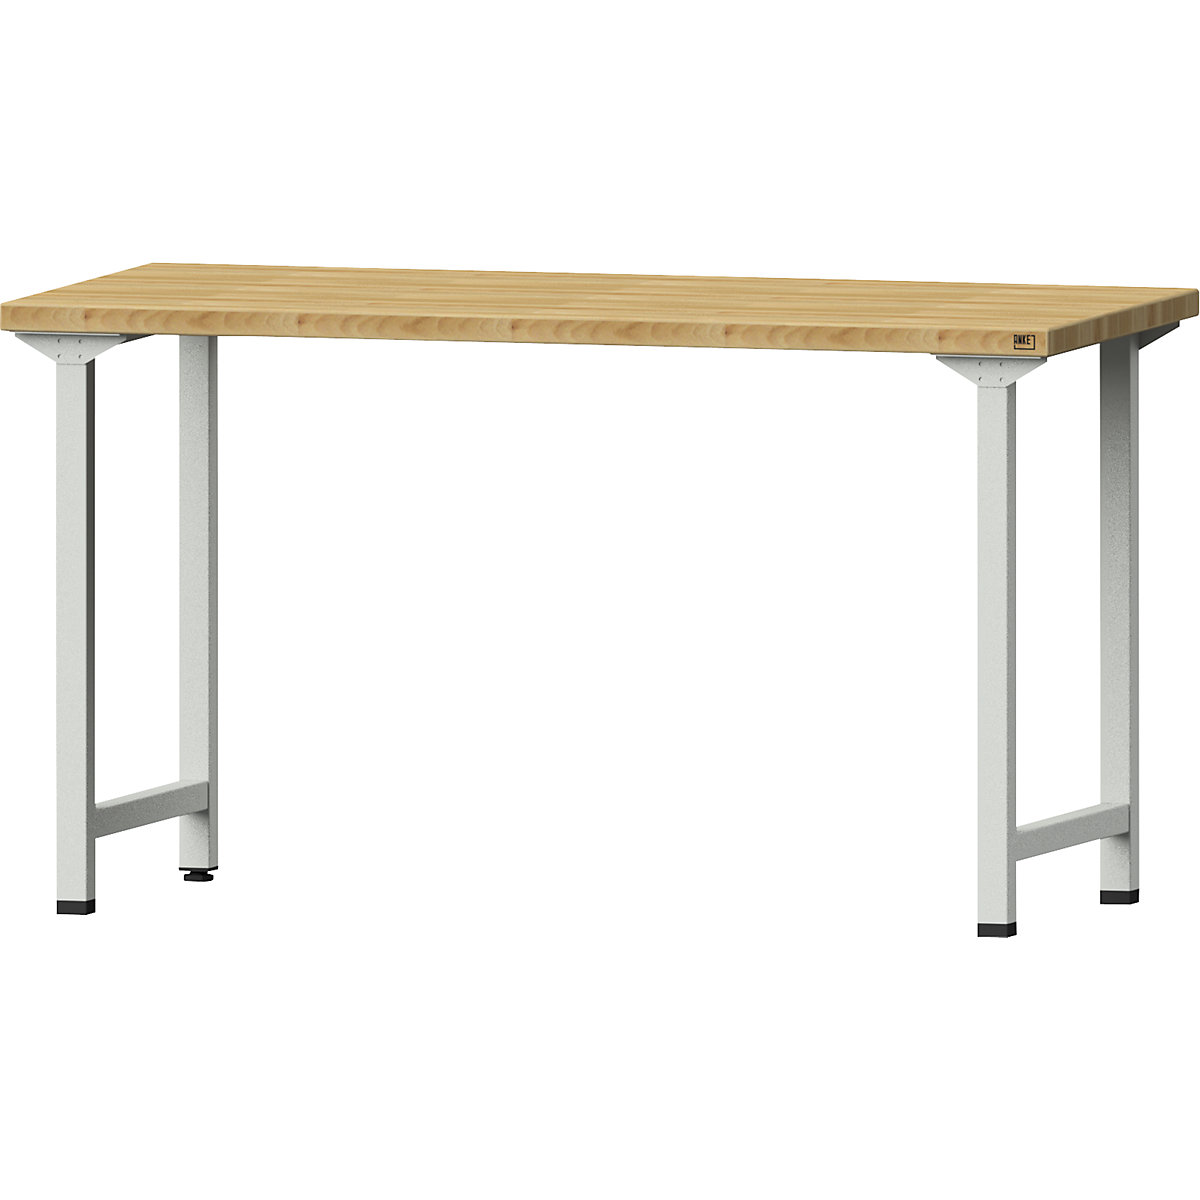 Stół warsztatowy, konstrukcja ramowa - ANKE